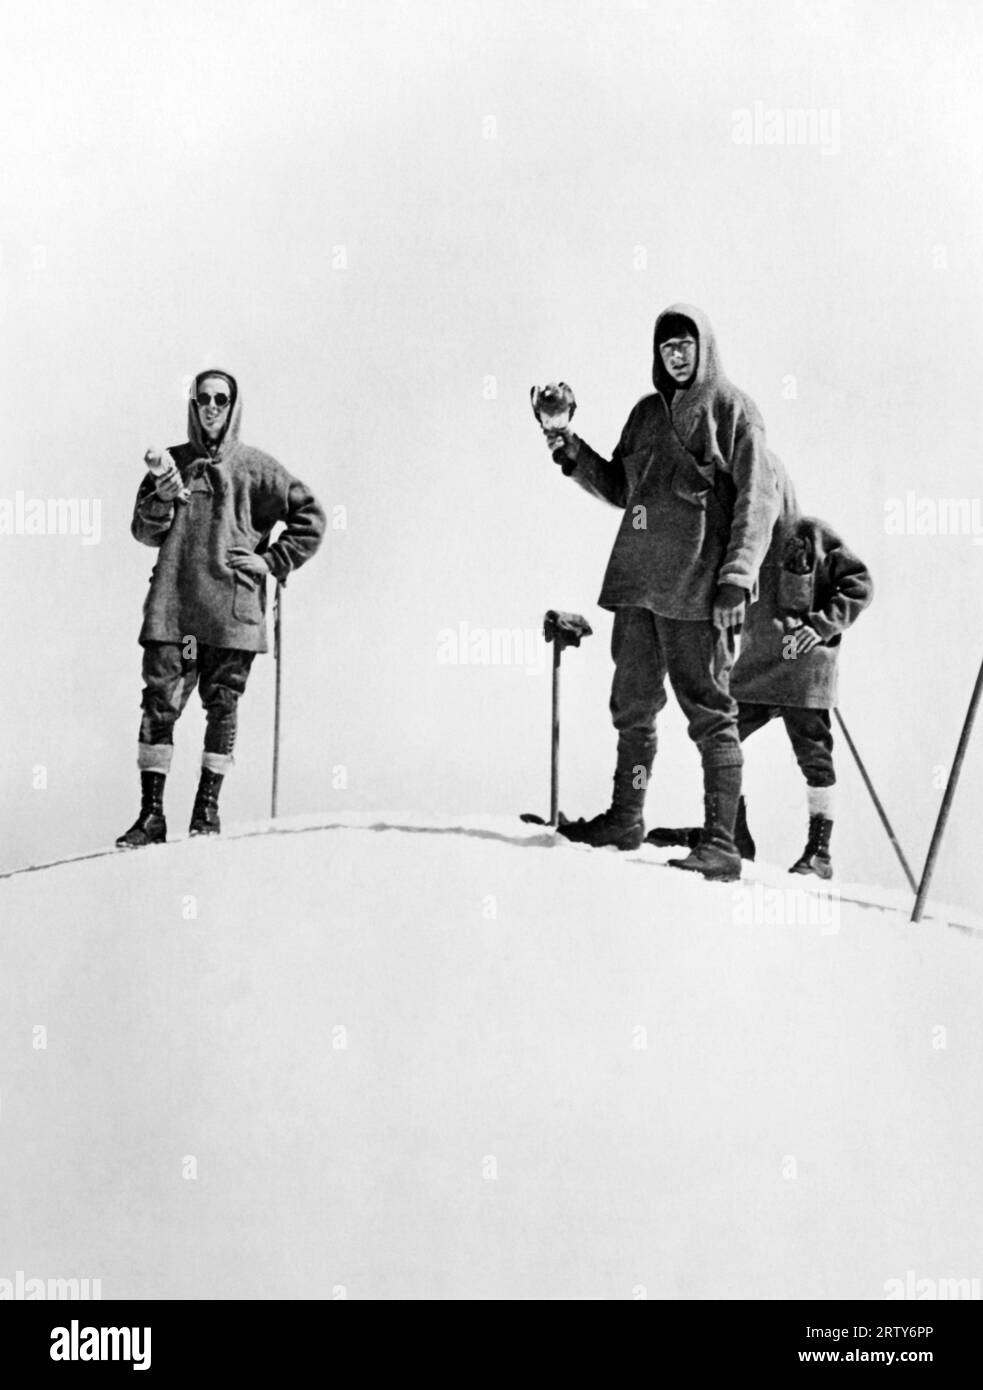 Tacoma, Washington le 7 septembre 1927 les Boy Scouts de Tacoma grimpent au sommet du mont. Tacoma (aujourd'hui Mt. Rainier) de libérer des pigeons avec des messages au chef Scout West de NY et au président Coolidge à Washington DC. Ici, ils viennent d'arriver au sommet de 14 411 pieds. Banque D'Images